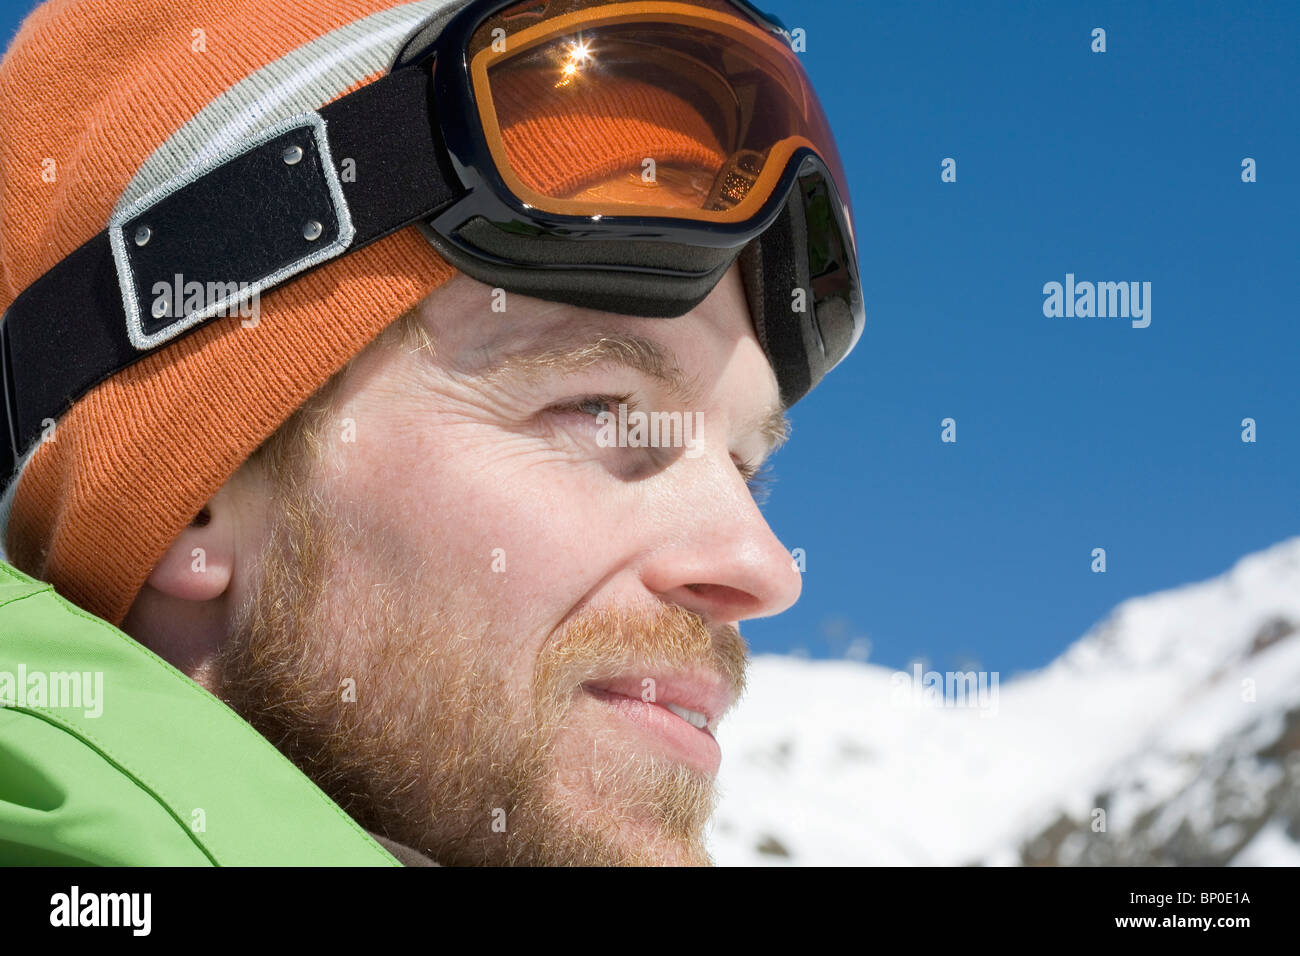 Dans l'homme paysage d'hiver avec les lunettes de ski Banque D'Images